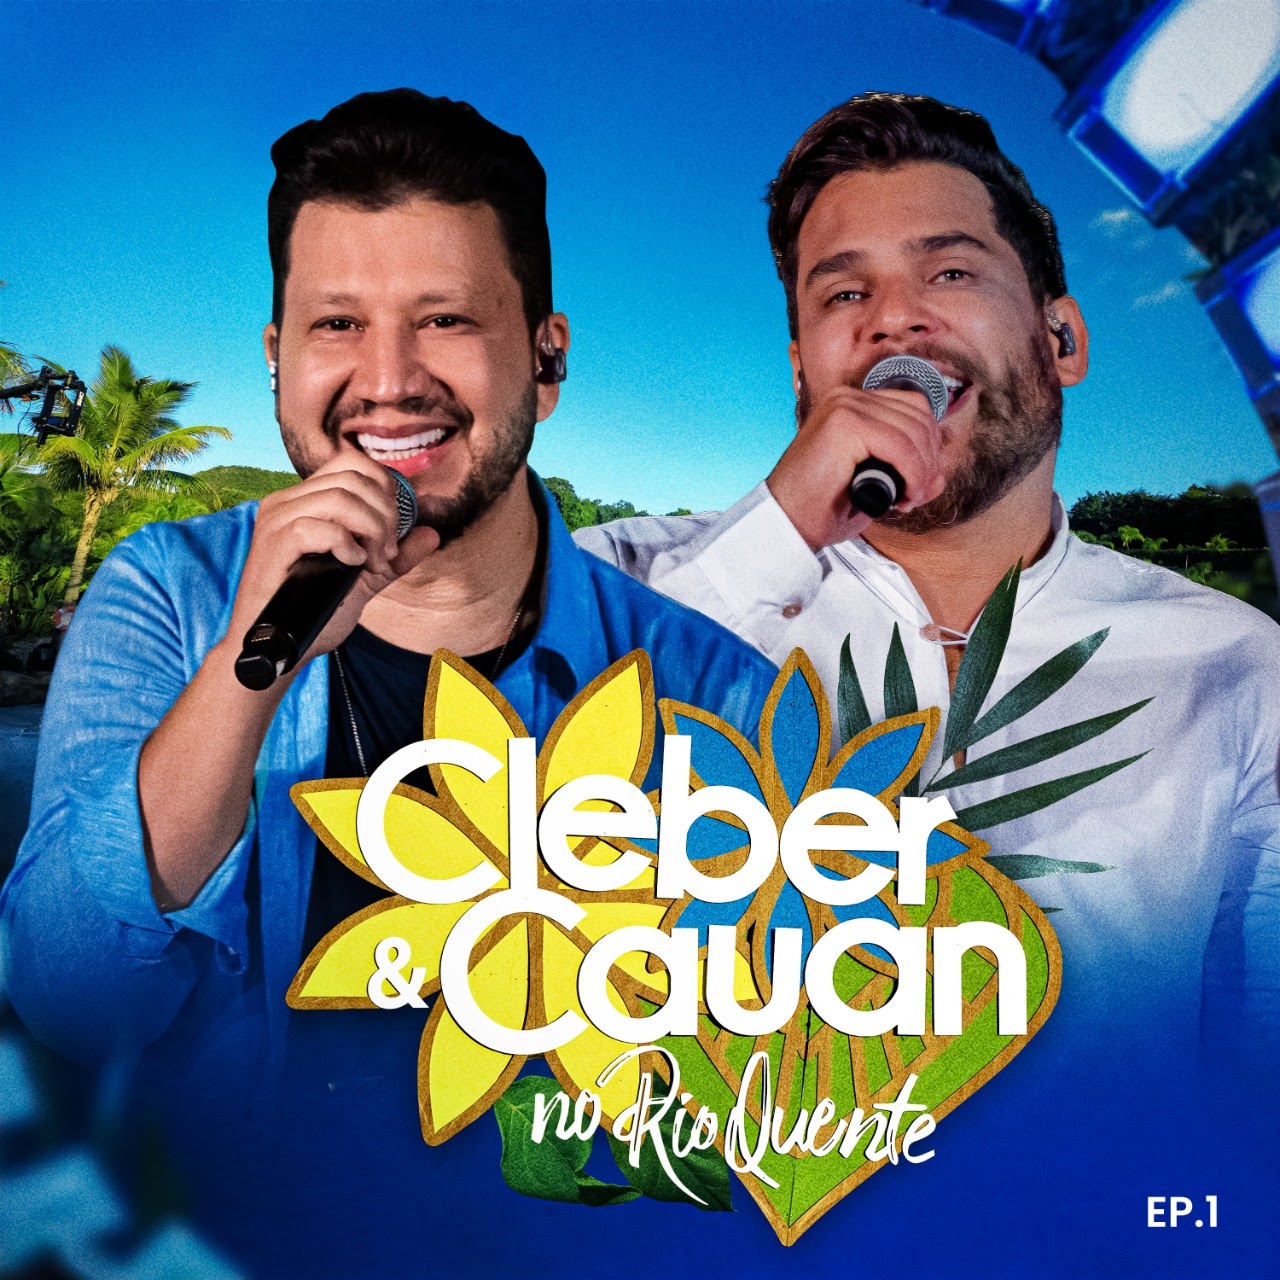 Com quatro faixas inéditas, Cleber & Cauan apresentam primeiro EP do projeto "Cleber & Cauan no Rio Quente" nesta sexta (13) 41